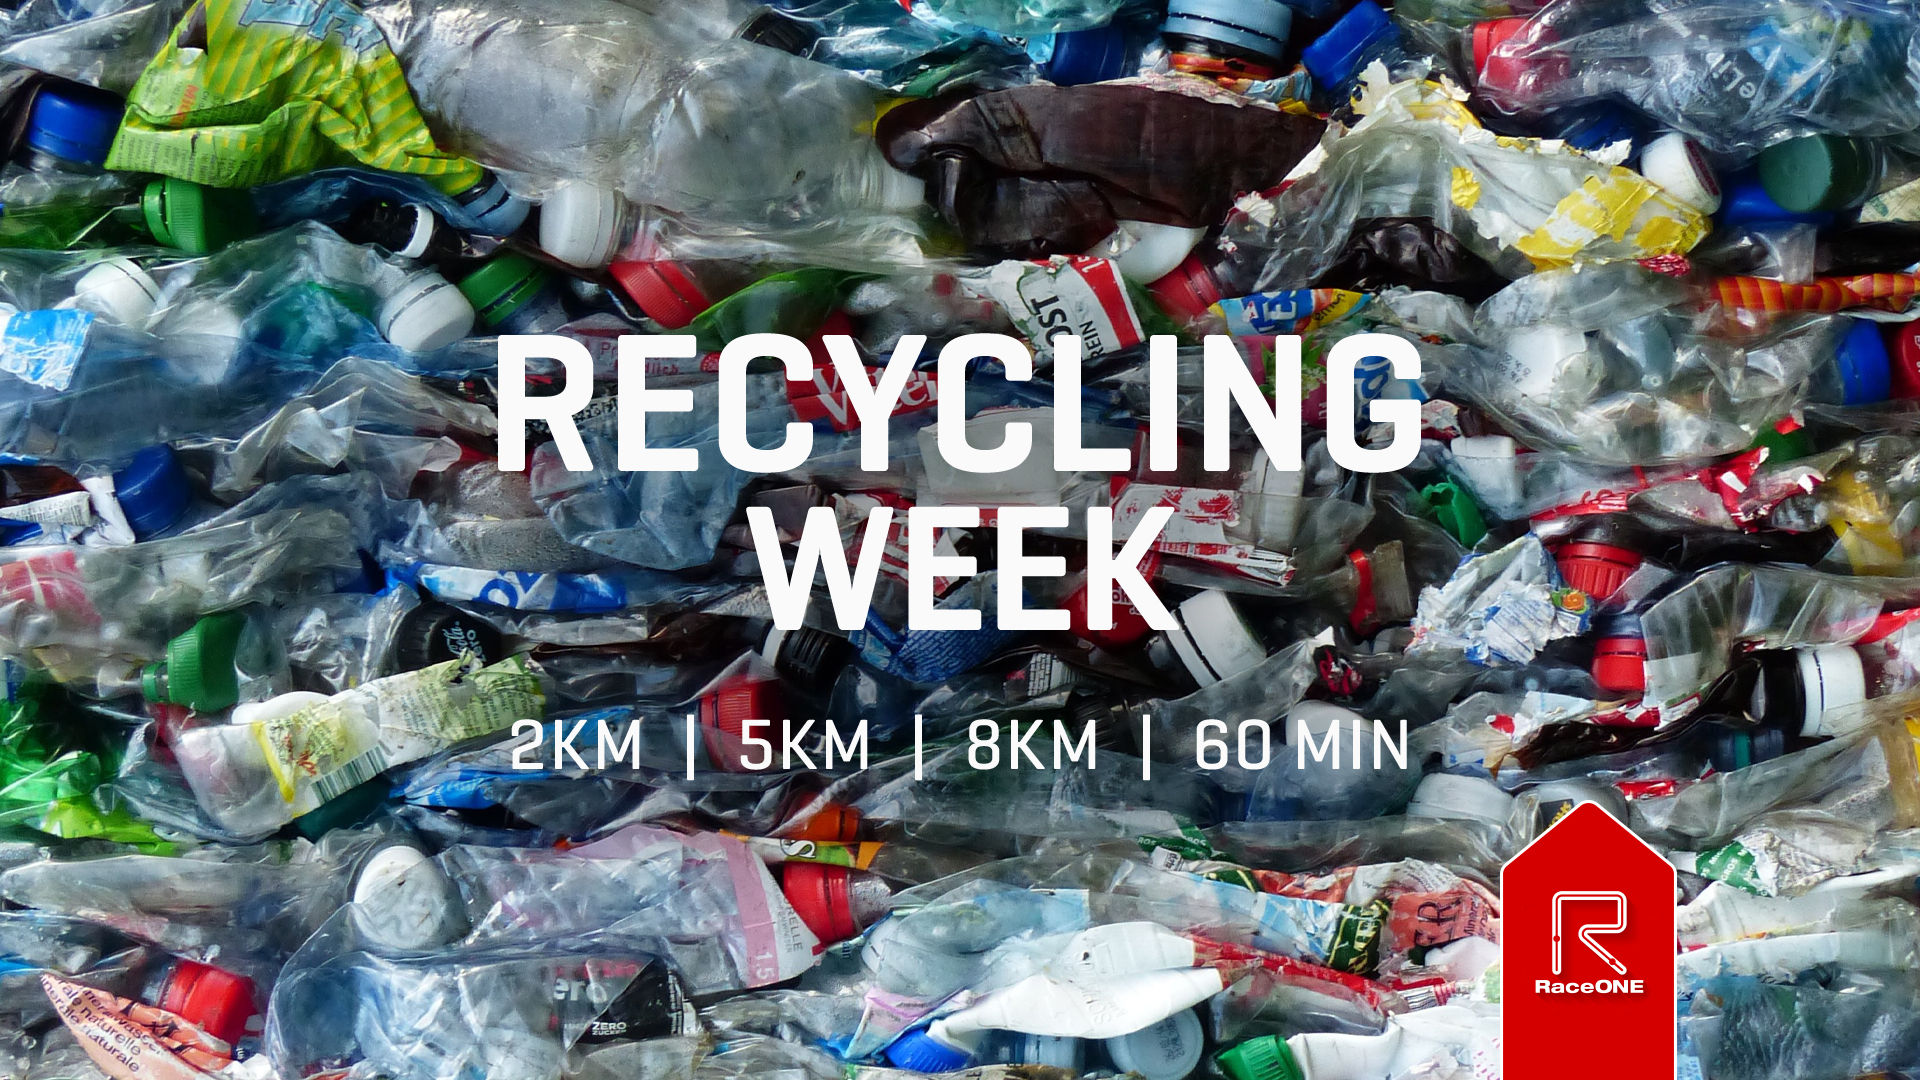 Recycle Week - 60min